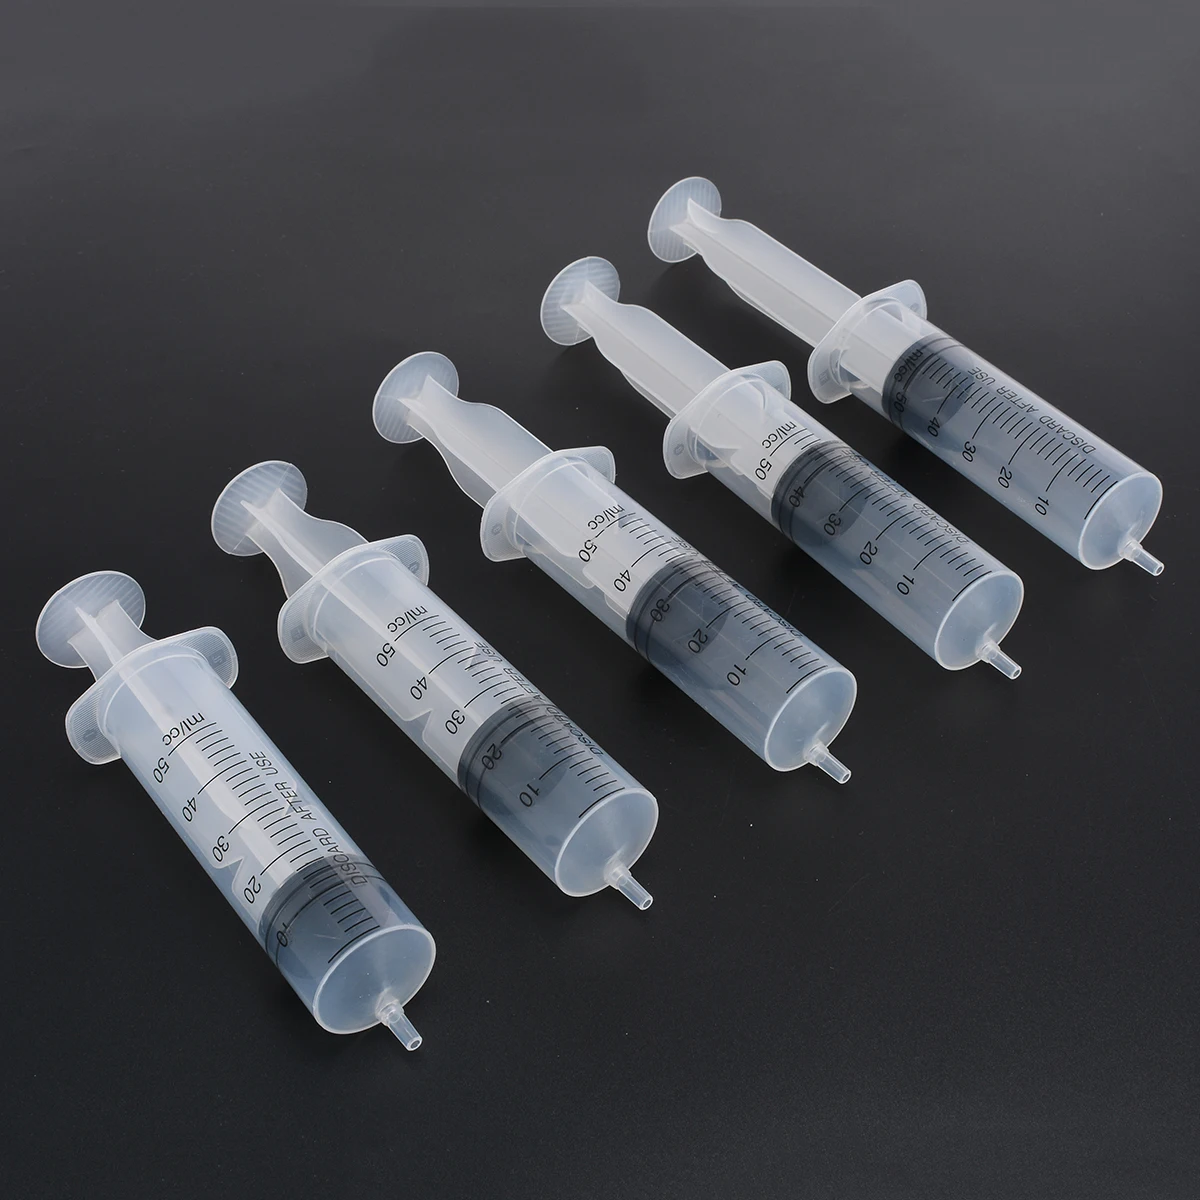 5 шт. шприцы 50 мл пластиковые одноразовые промышленные ручные шприцы с резиновой мембраной для смешивания многих жидкостей